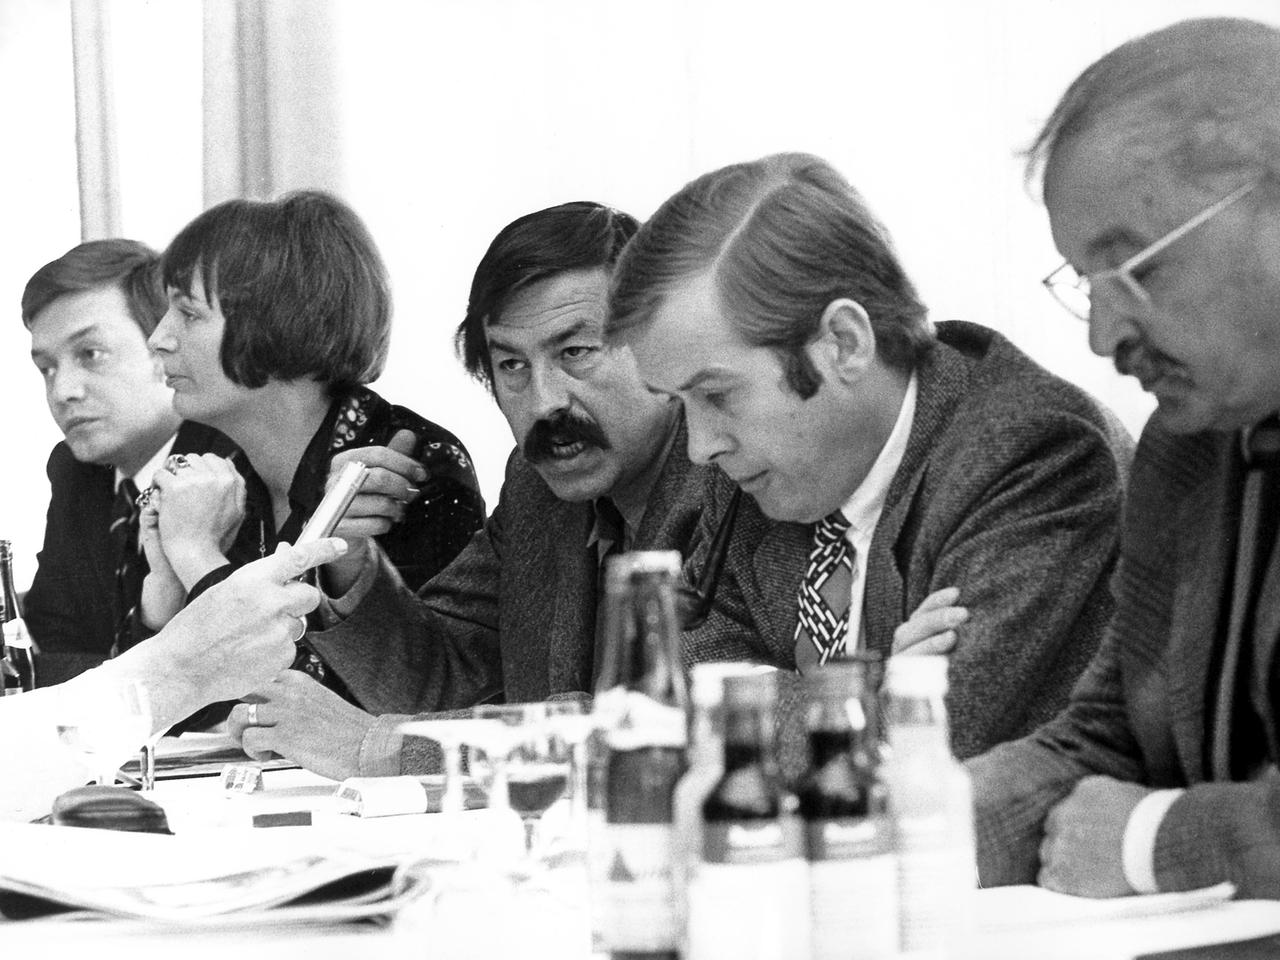 Der Schriftsteller Günter Grass (M) auf einer Pressekonferenz der Sozialdemokratischen Wählerinitiative am 8. September 1972 in Stuttgart. Rechts der Schriftsteller Thaddäus Troll, 2.v.r. Prof. Eberhard Jäckel. Links neben Grass die Landeschefin der Wählerinitiative, Heincke Jädicke.